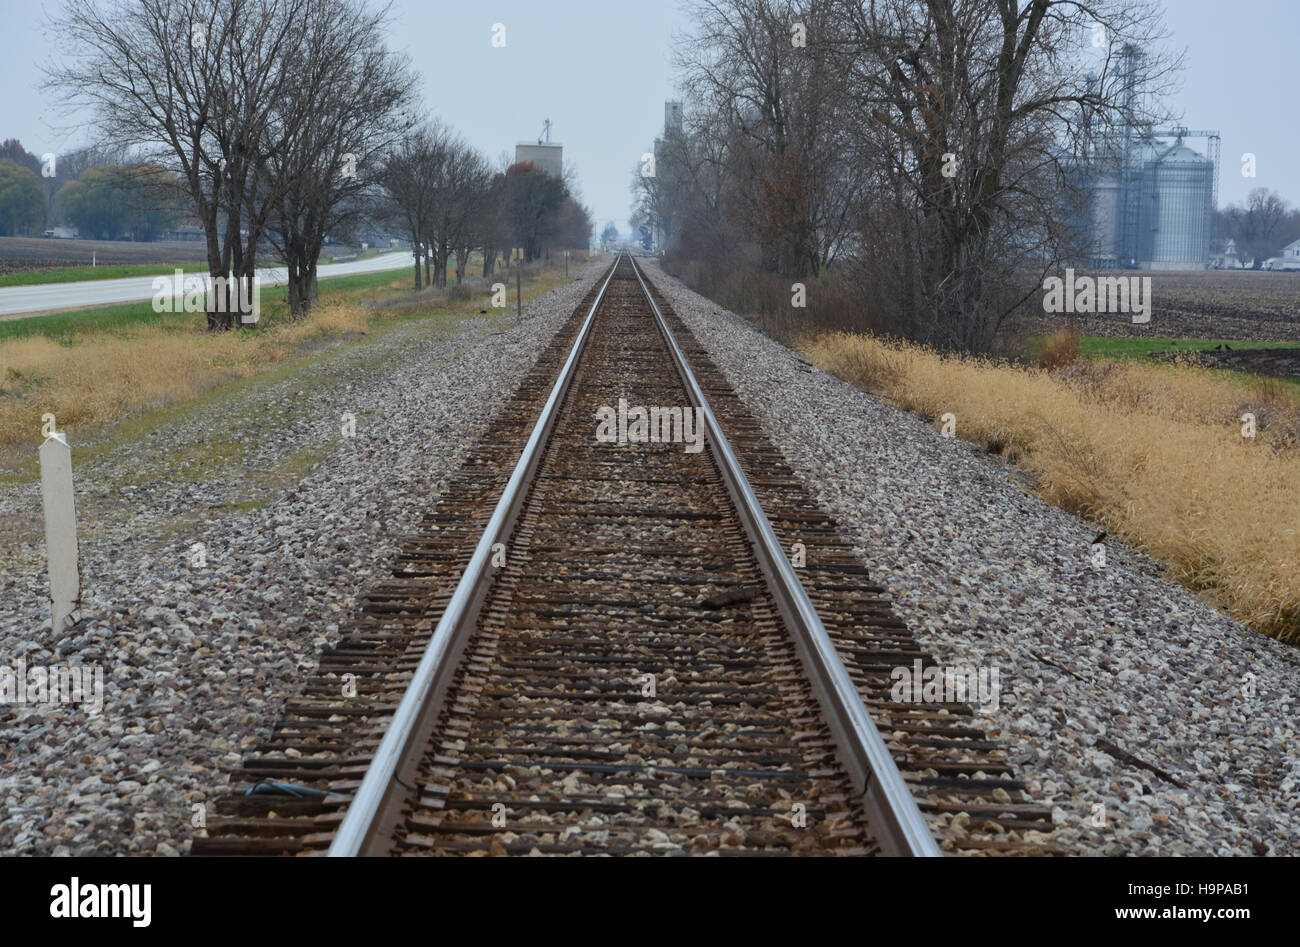 Les voies de chemin de fer s'étendent au loin dans la distance sous un ciel de novembre gris et froid dans le Midwest des États-Unis. Banque D'Images